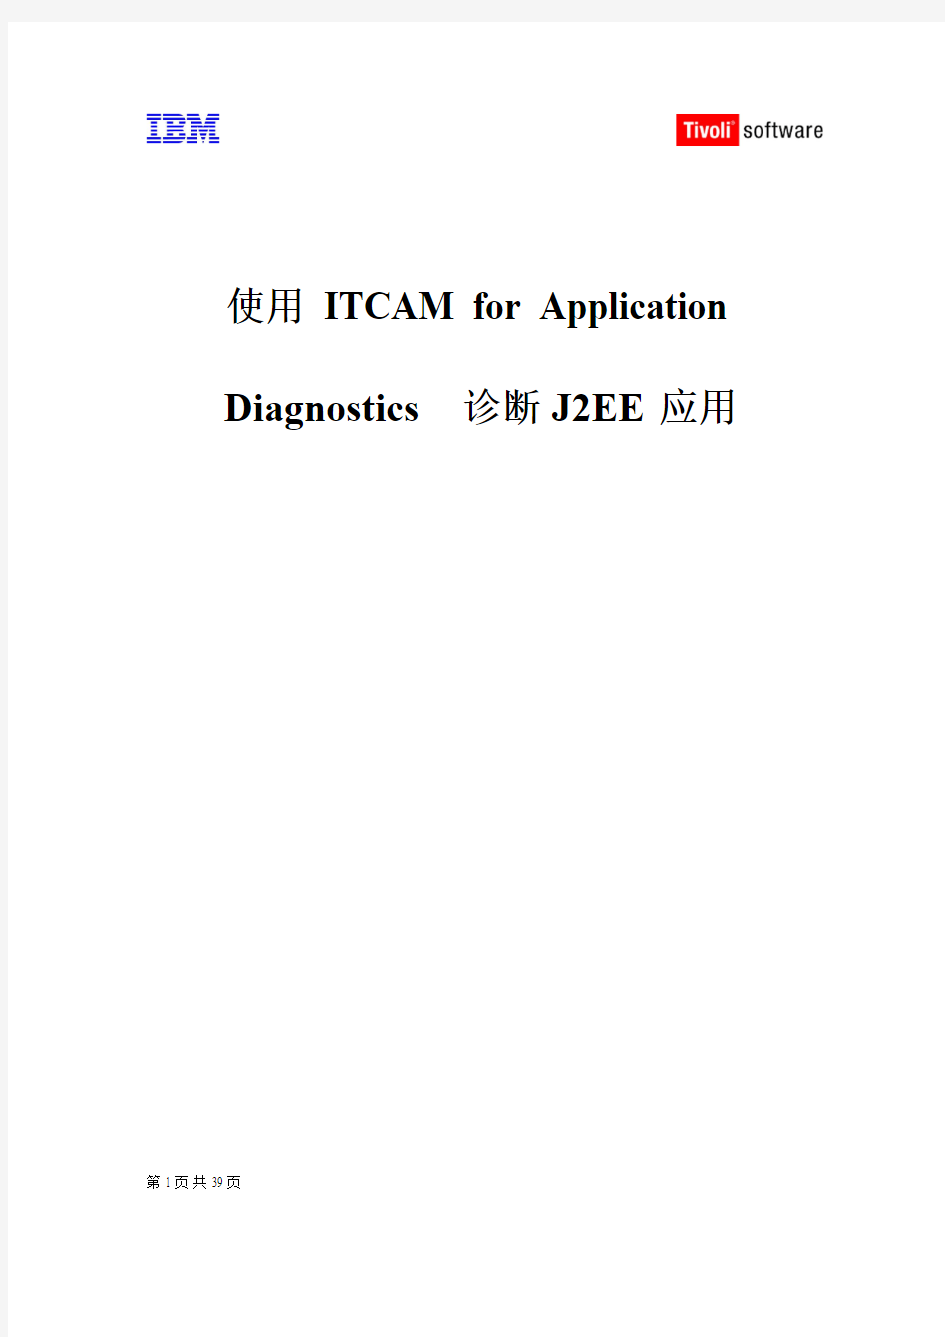 使用 ITCAM for Application Diagnostics 诊断J2EE应用